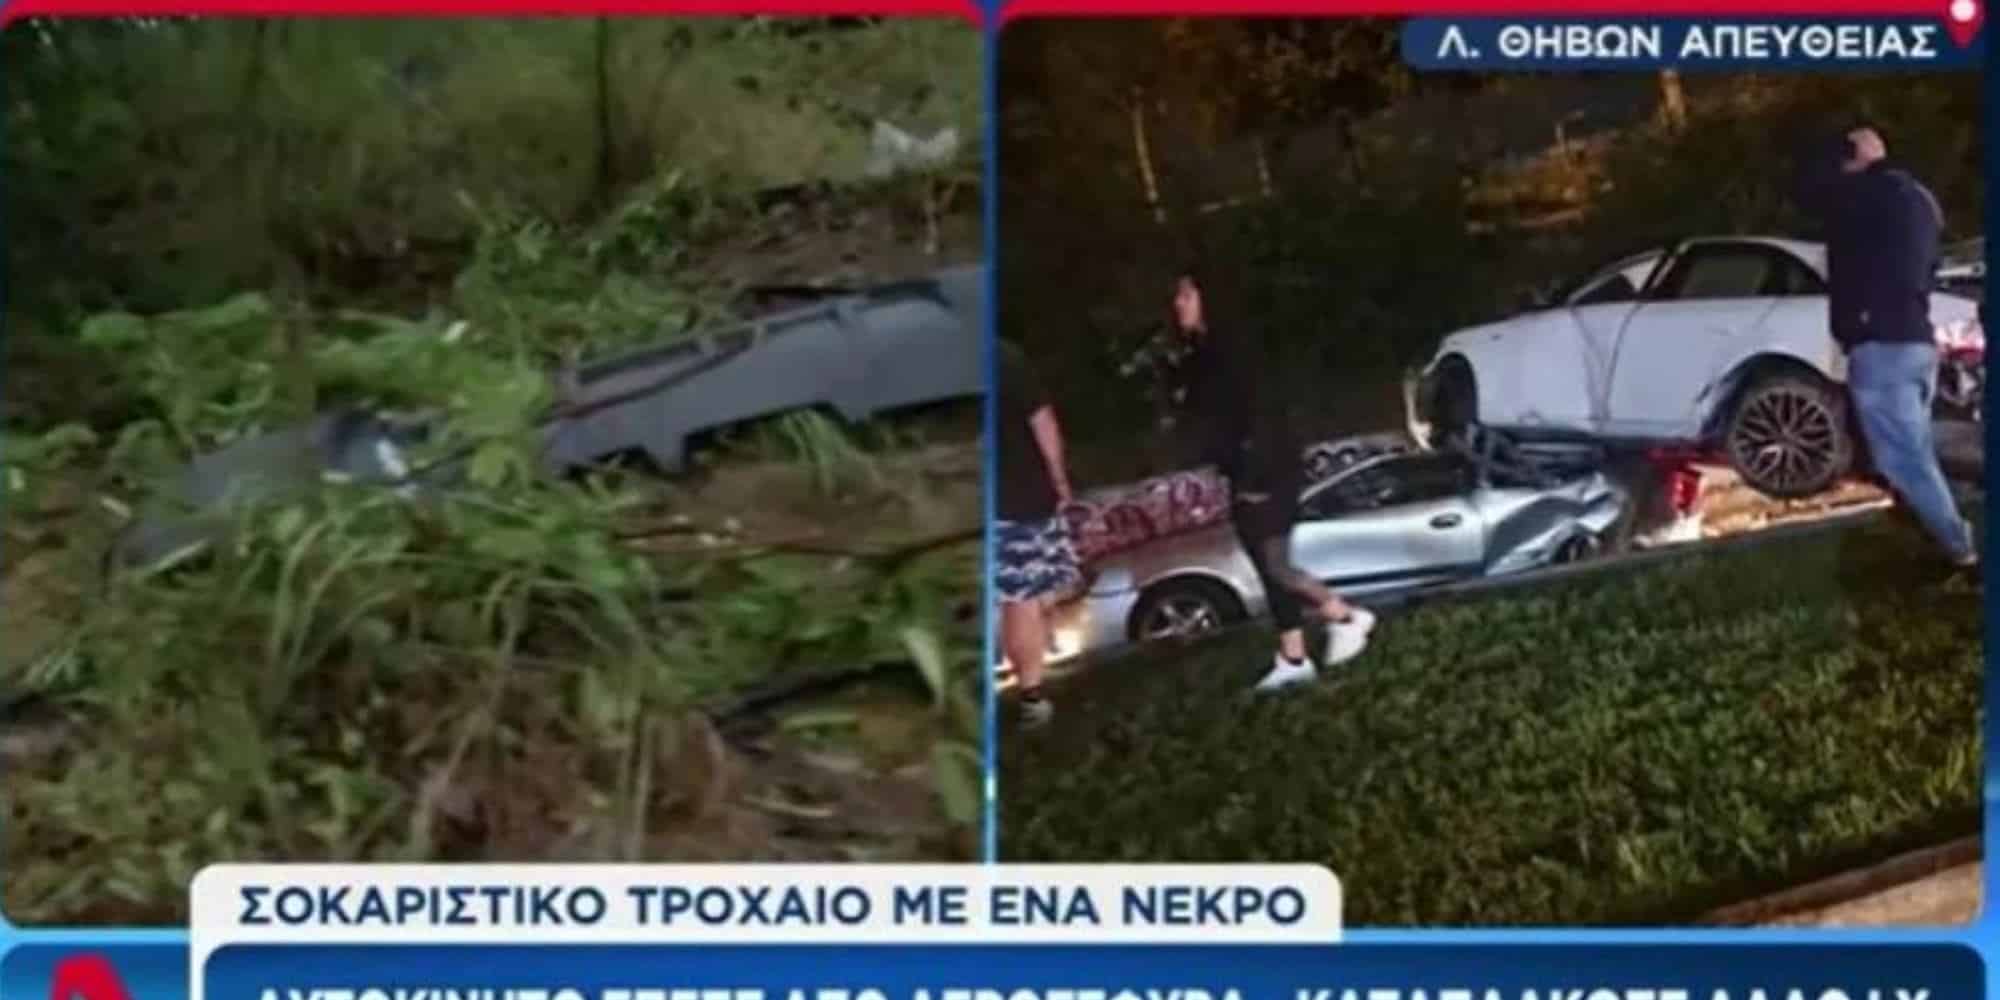 troxaio nikaia - Σοκ στη Νίκαια: Αυτοκίνητο έφυγε από αερογέφυρα και προσγειώθηκε πάνω σε οδηγό άλλου ΙΧ - Νεκρός 43χρονος (εικόνα & βίντεο)